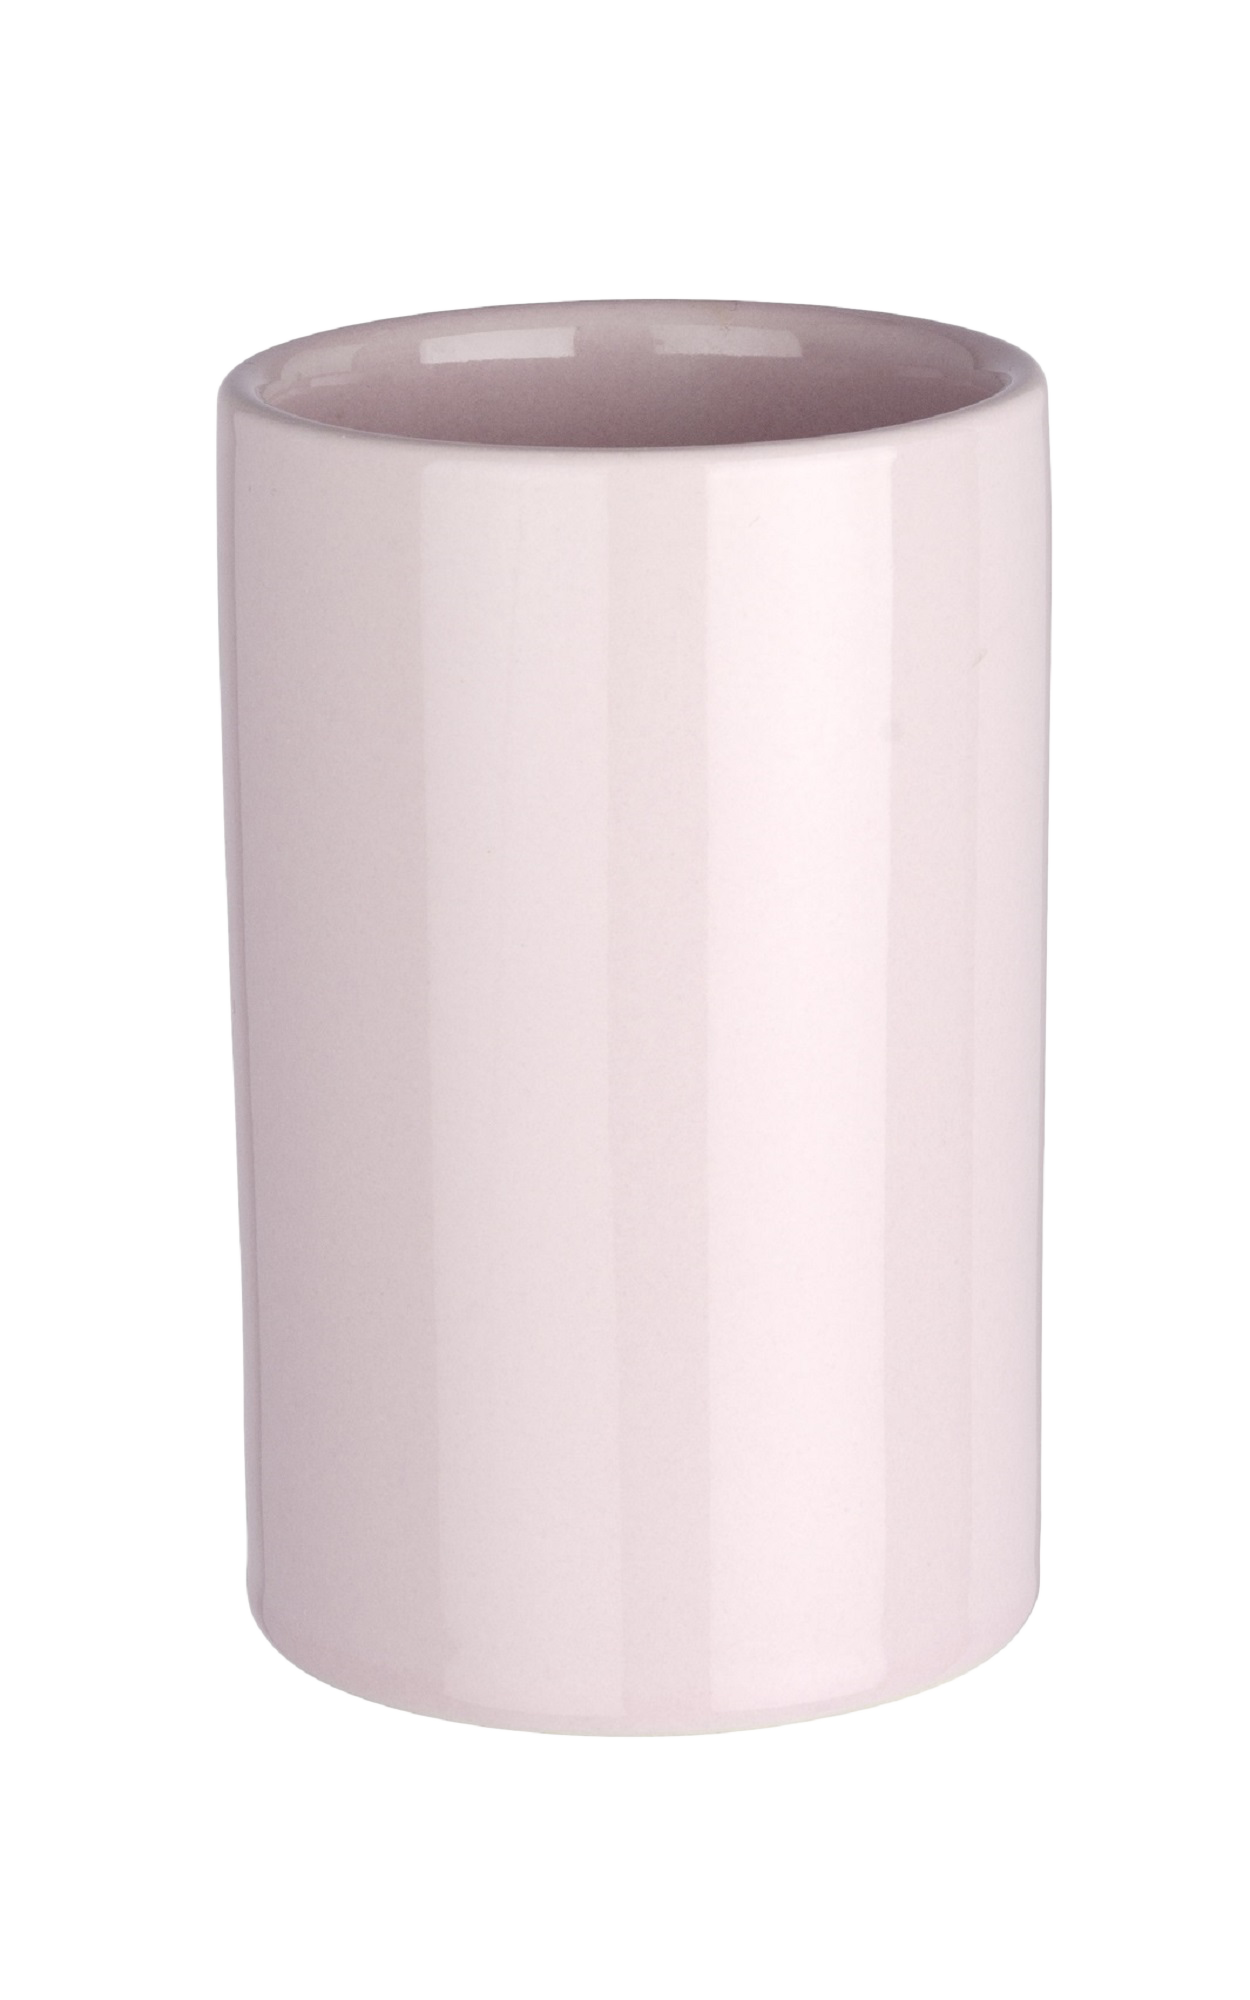 Vaso de baño polaris rosa pastel brillante